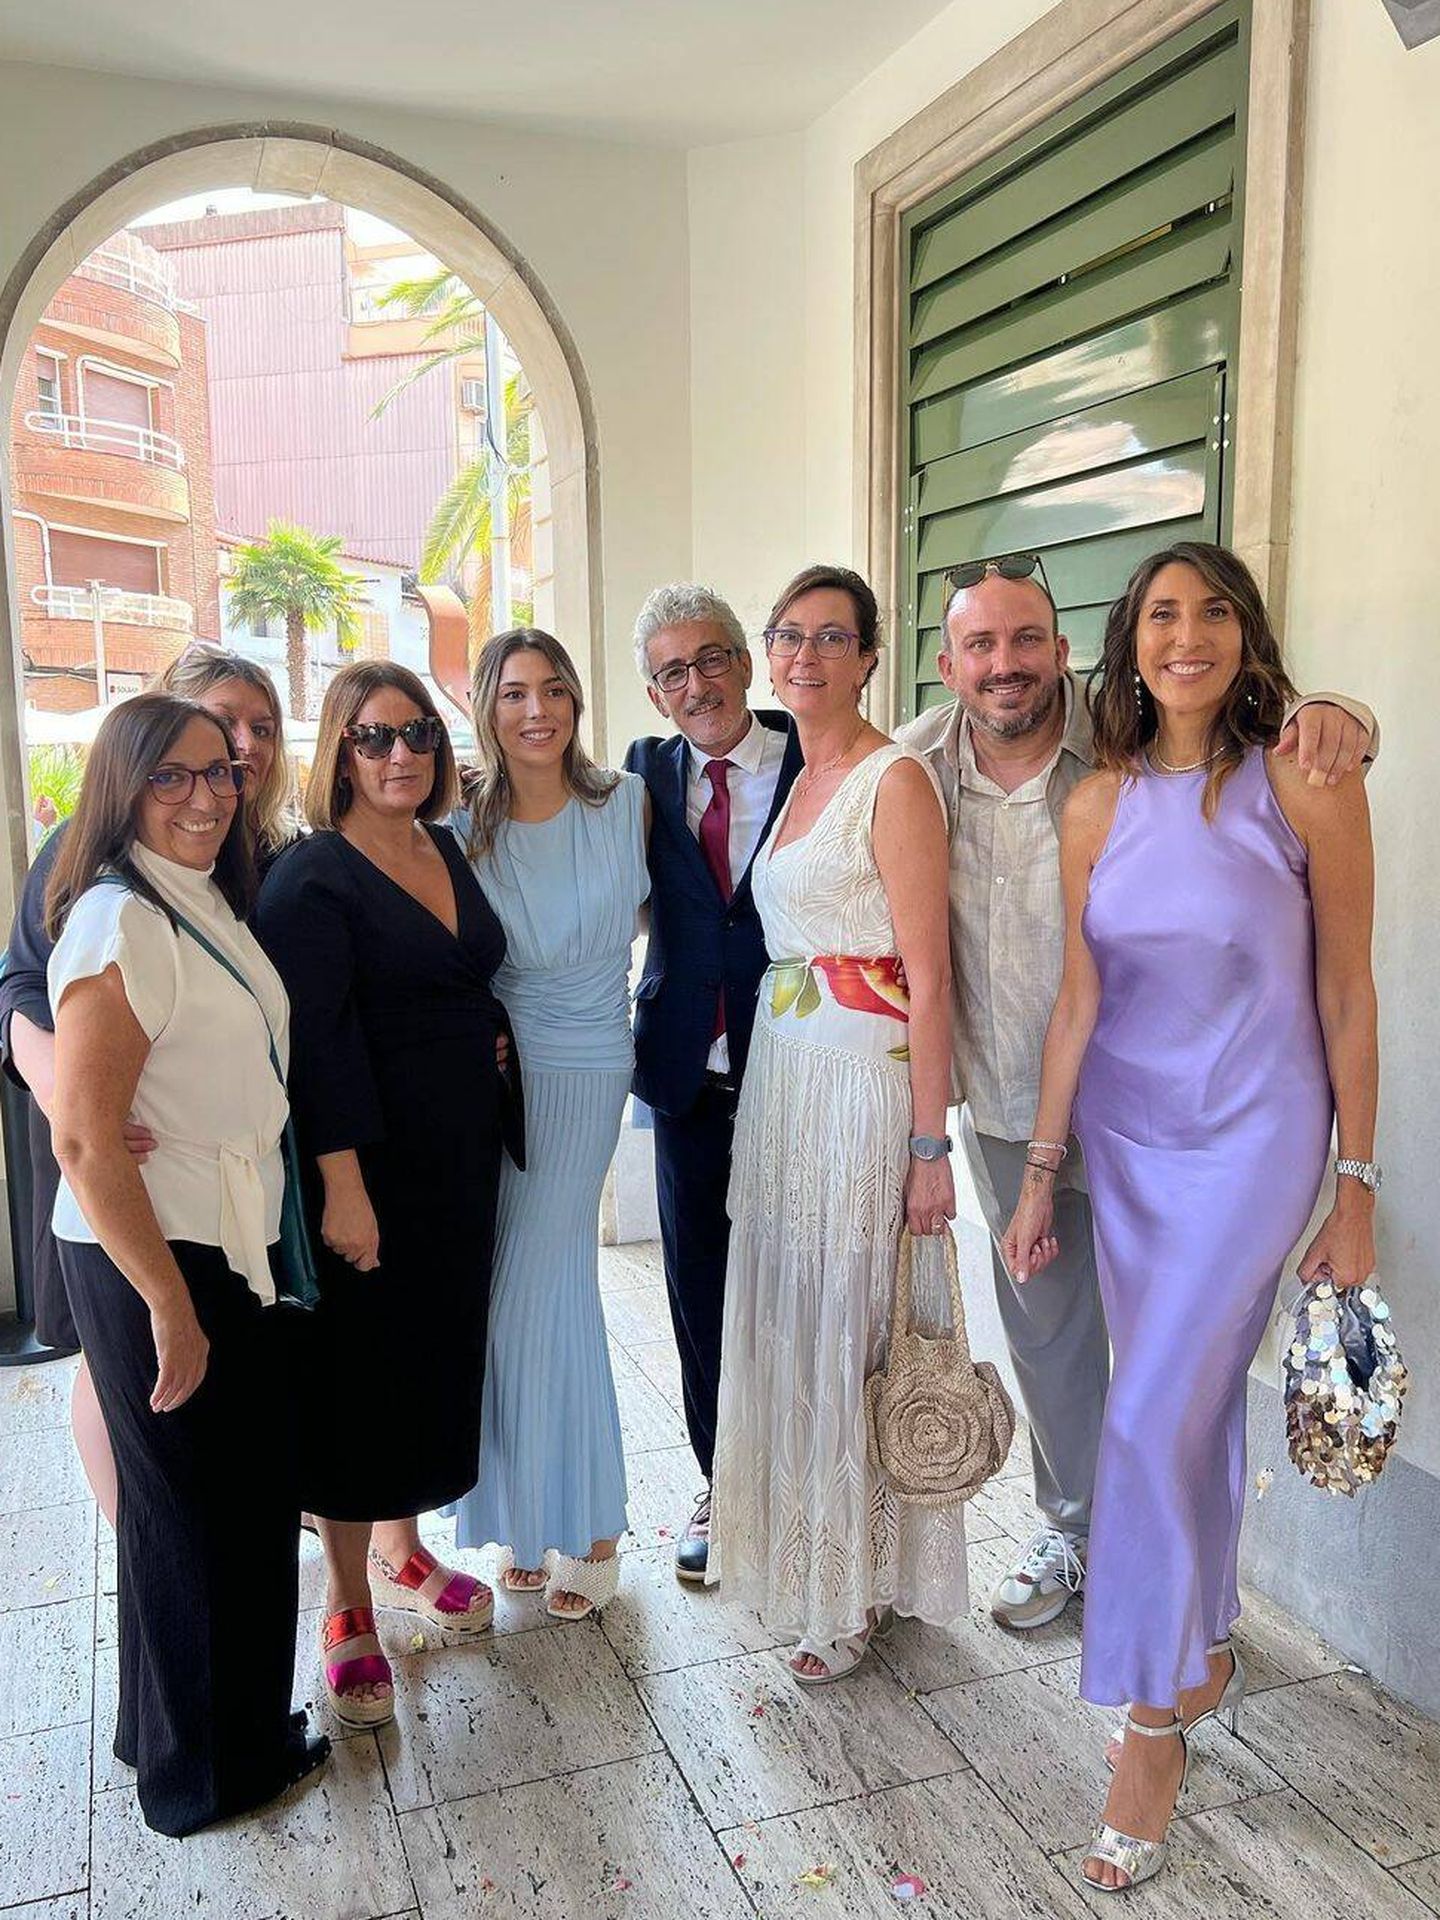 Fotografías de la boda de David Fernández y Ana Gallardo. (Instagram/@paz_padilla)